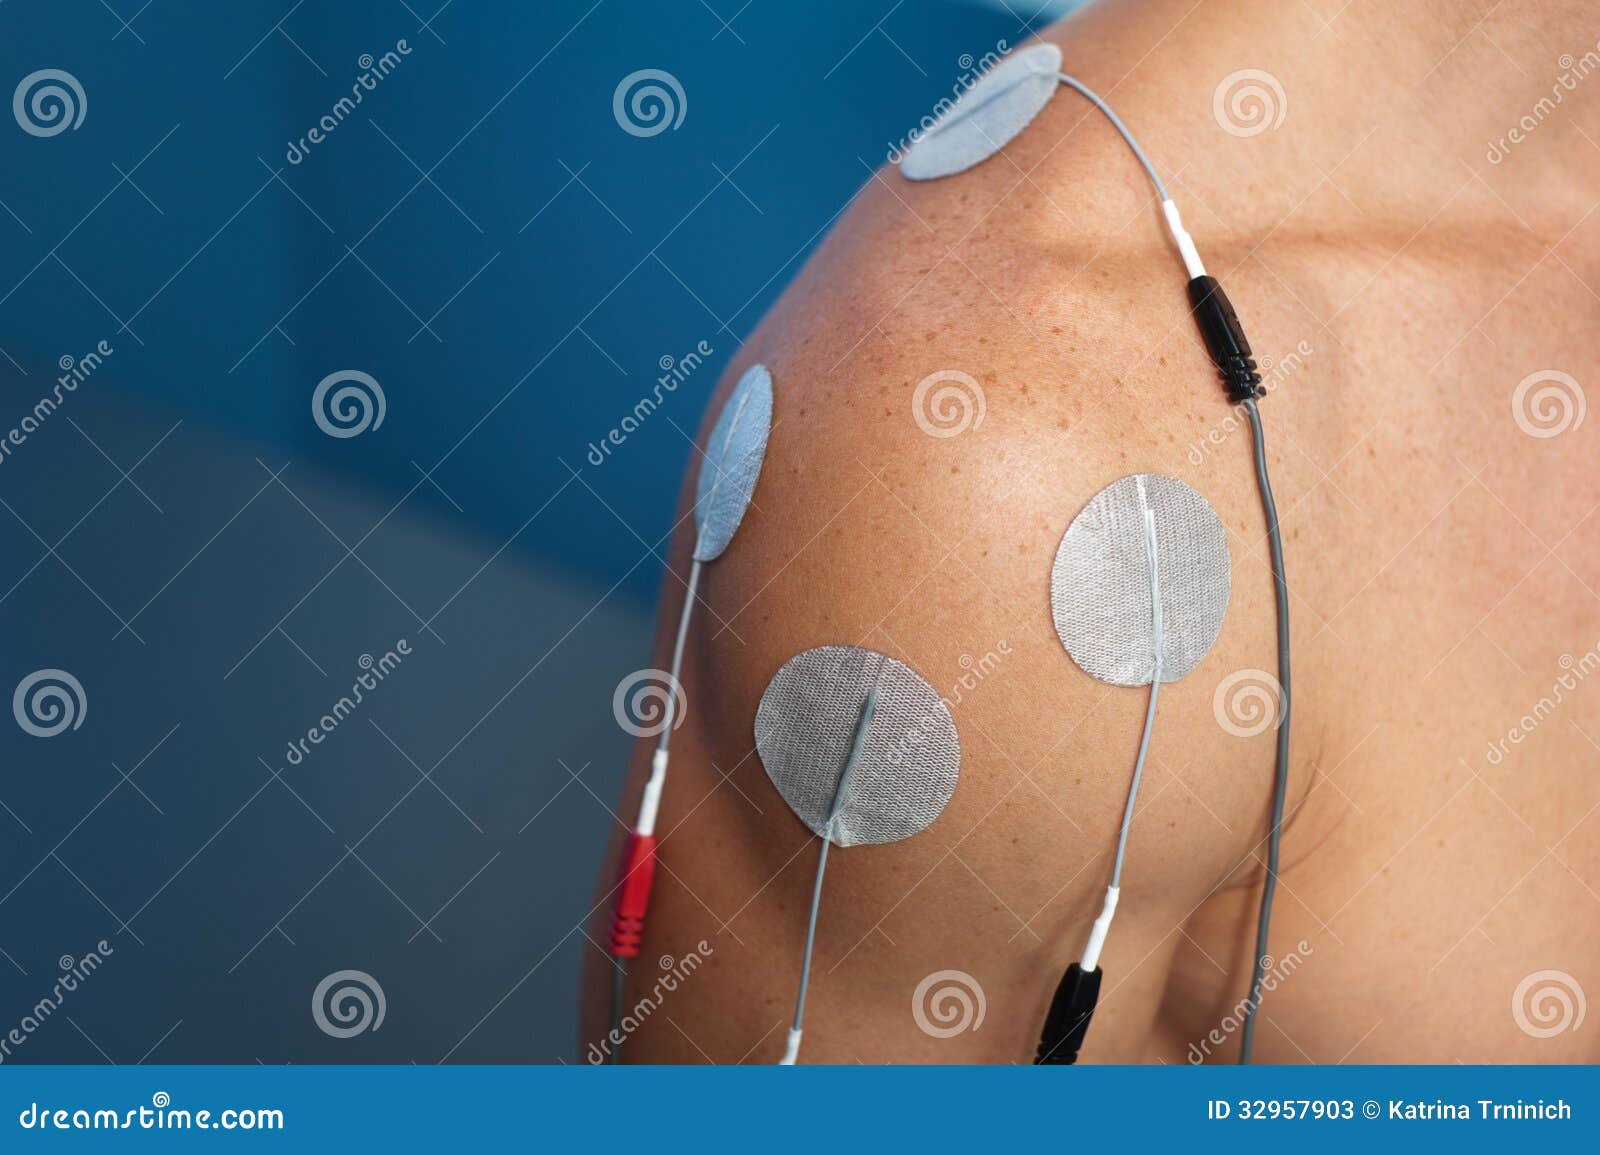 shoulder electrical stimulation / tens